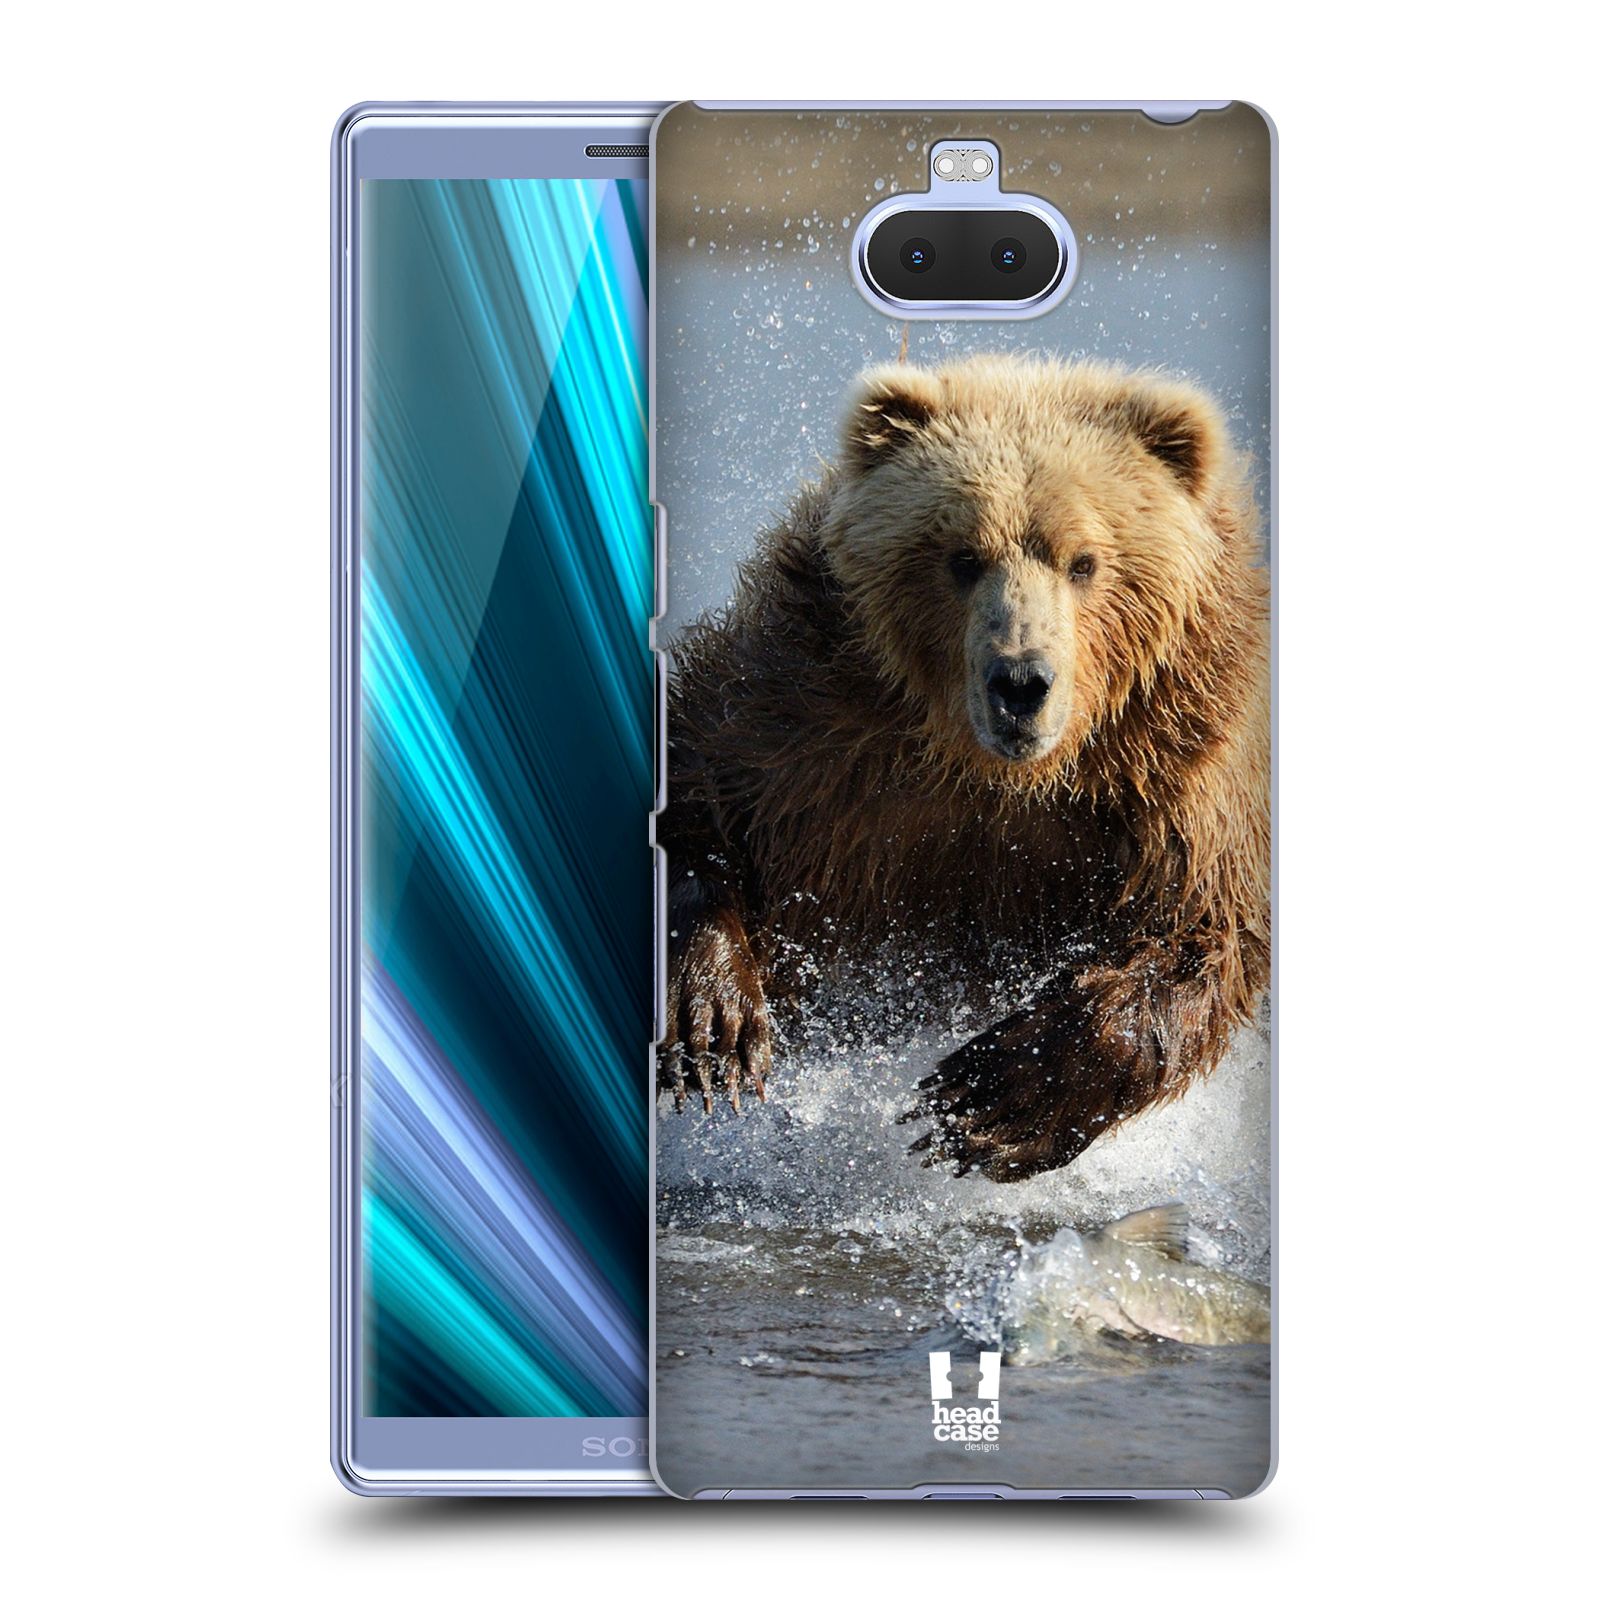 Pouzdro na mobil Sony Xperia 10 - Head Case - vzor Divočina, Divoký život a zvířata foto MEDVĚD GRIZZLY HŇEDÁ